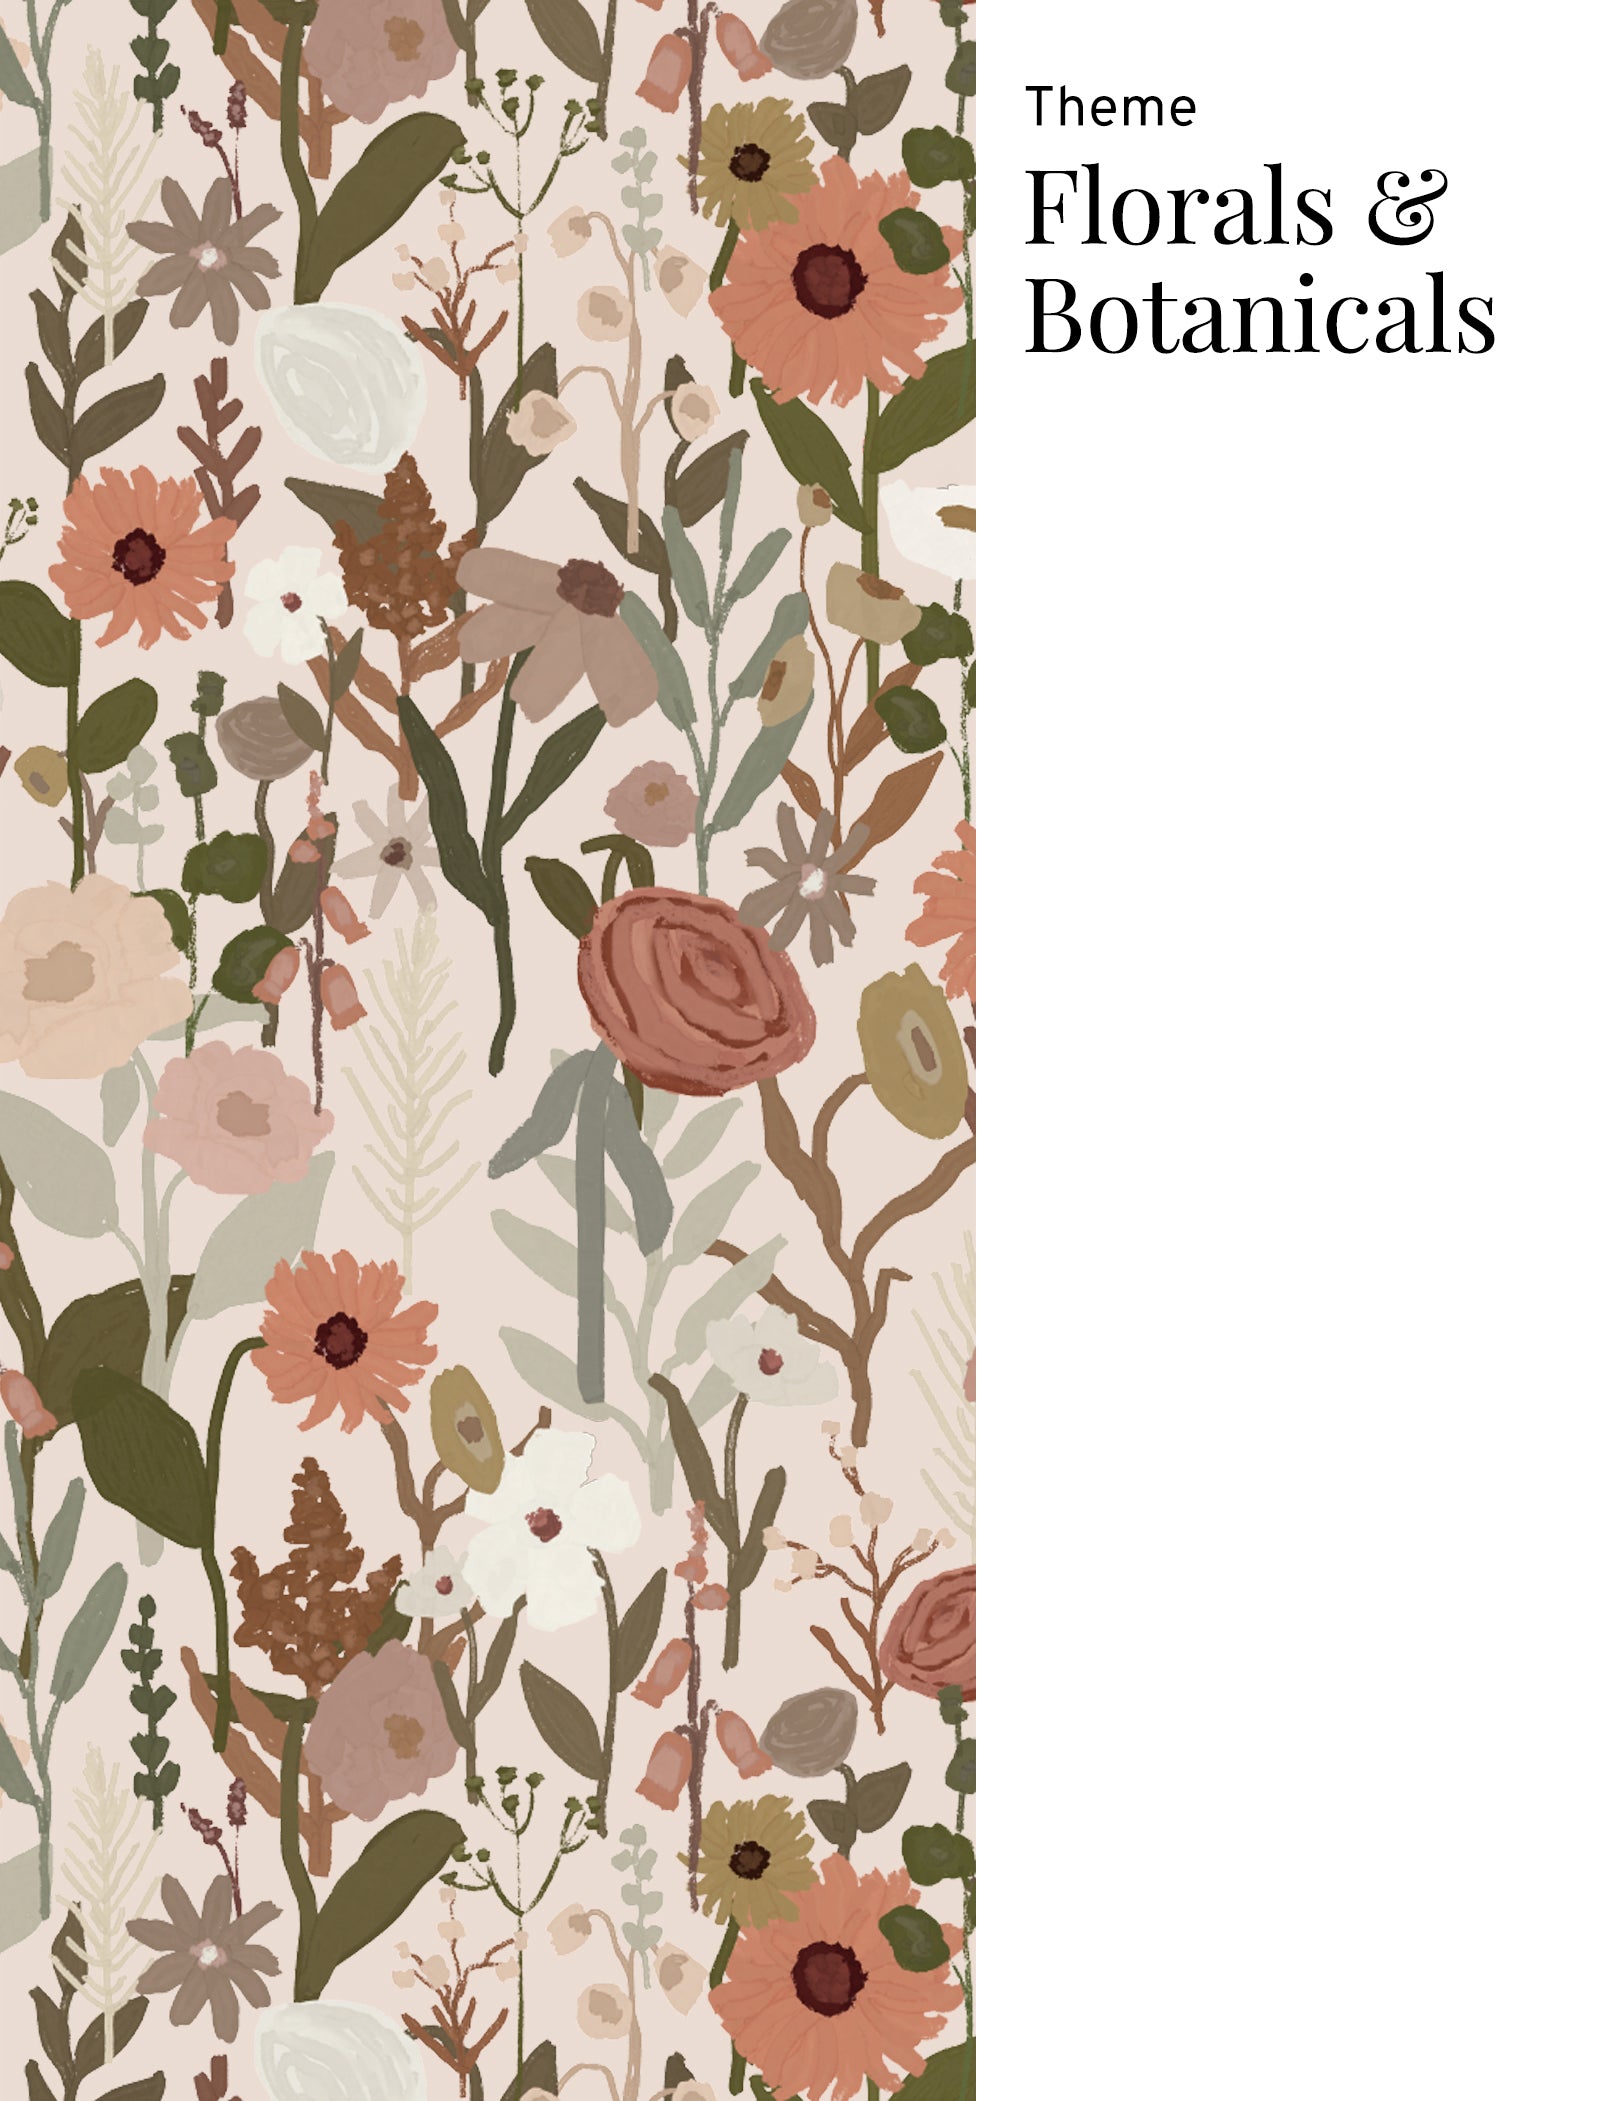 Florals & Botanicals